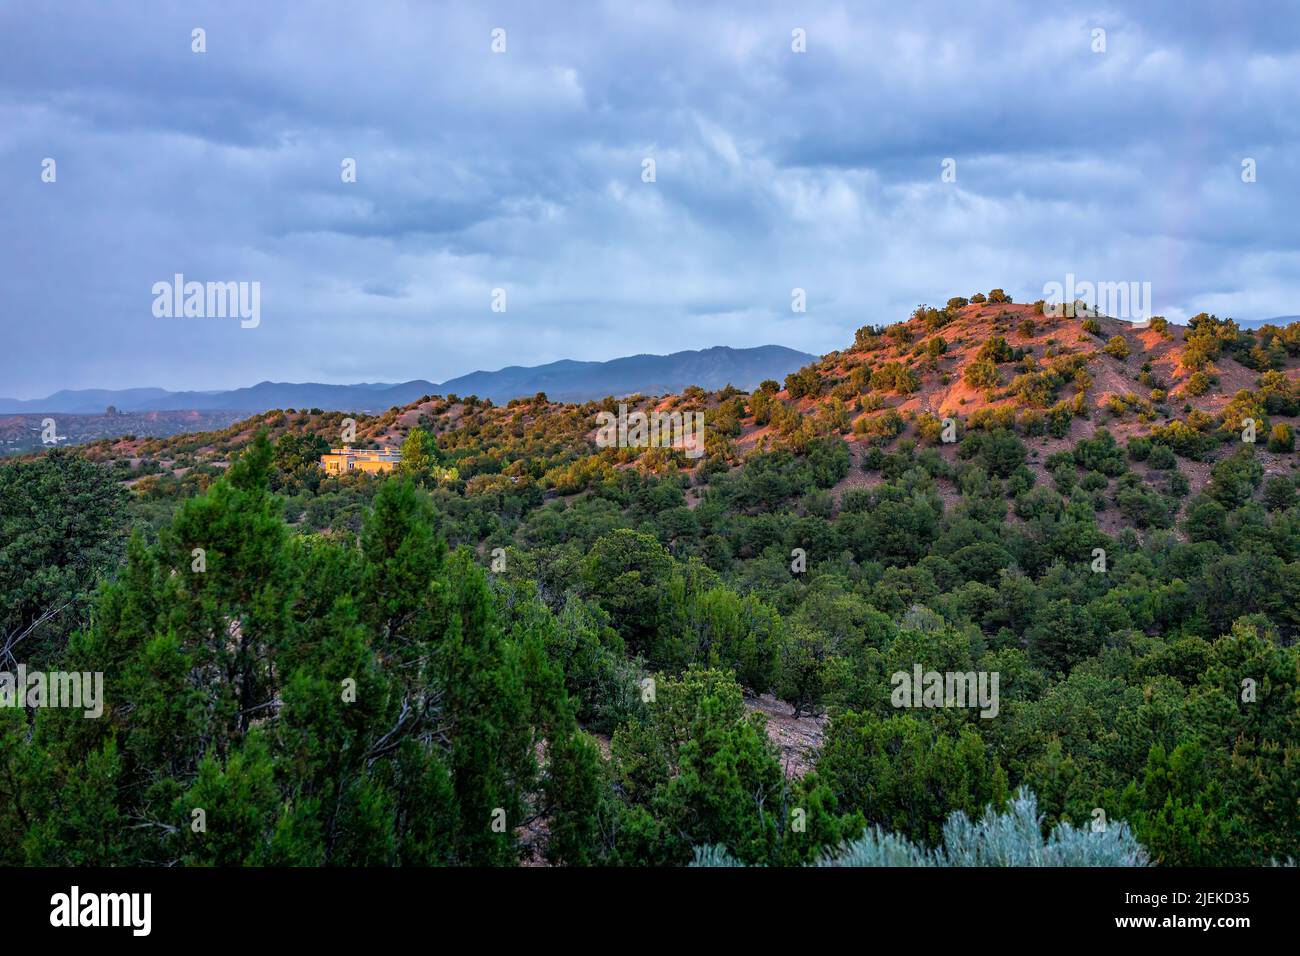 Puesta de sol en Santa Fe, montañas de Nuevo México en el barrio de la comunidad de Tesuque con luz solar en las casas, plantas verdes y cielo azul oscuro en el desierto alto Foto de stock